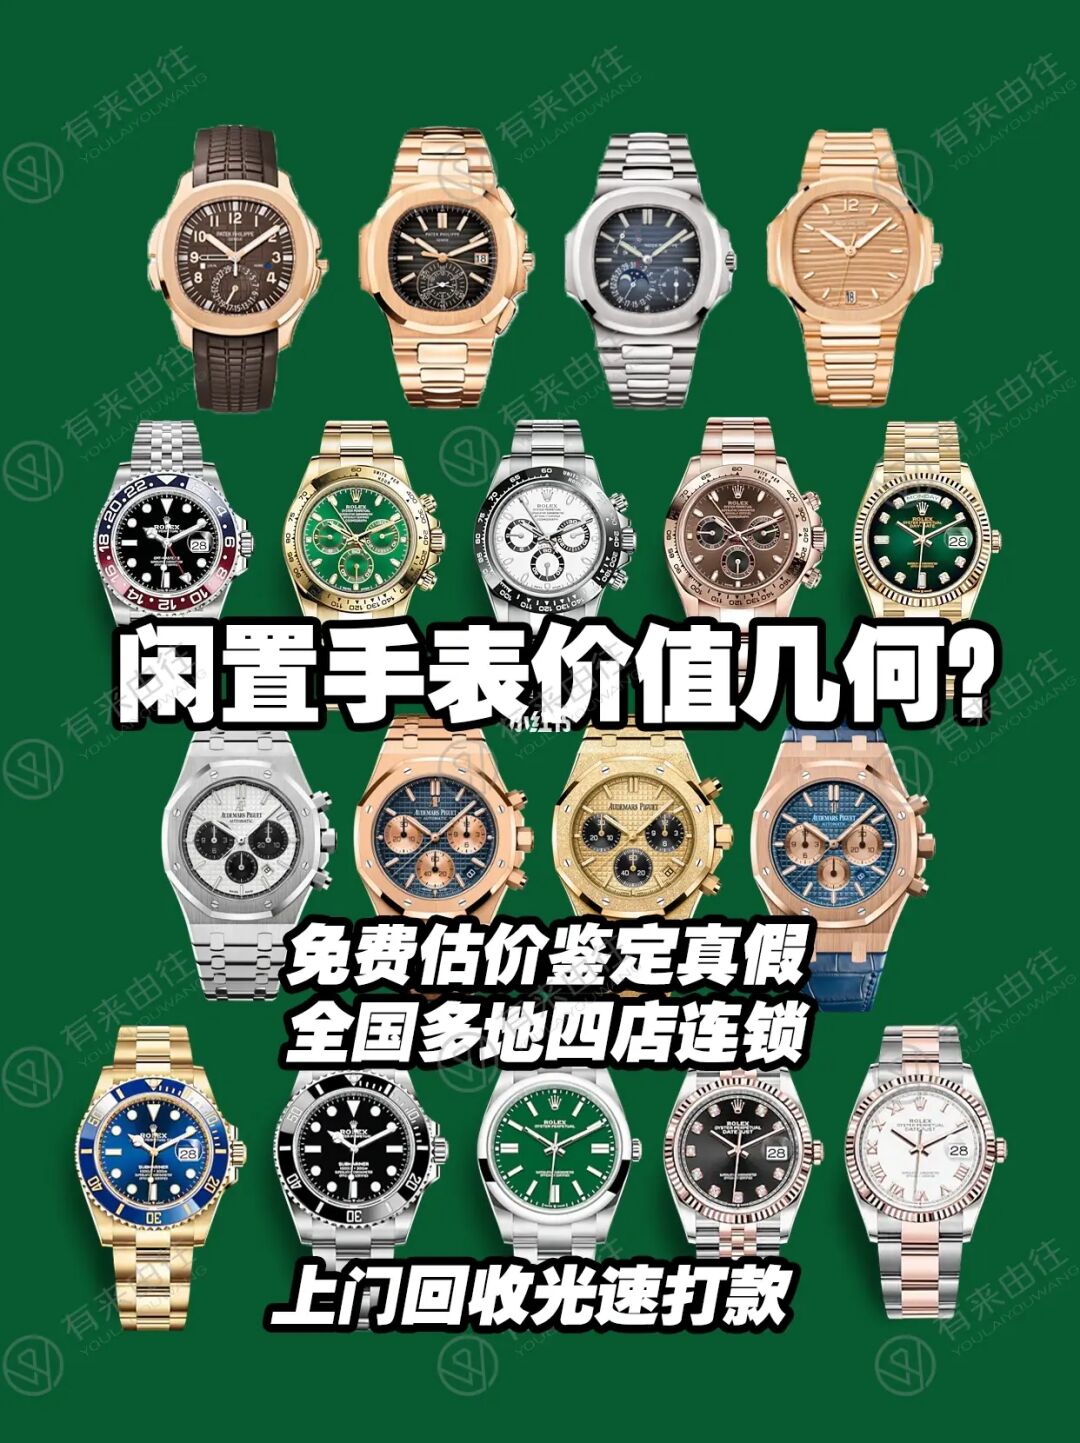 二手浪琴手表能卖多少钱_二手浪琴手表可以卖多少钱_卖二手手表